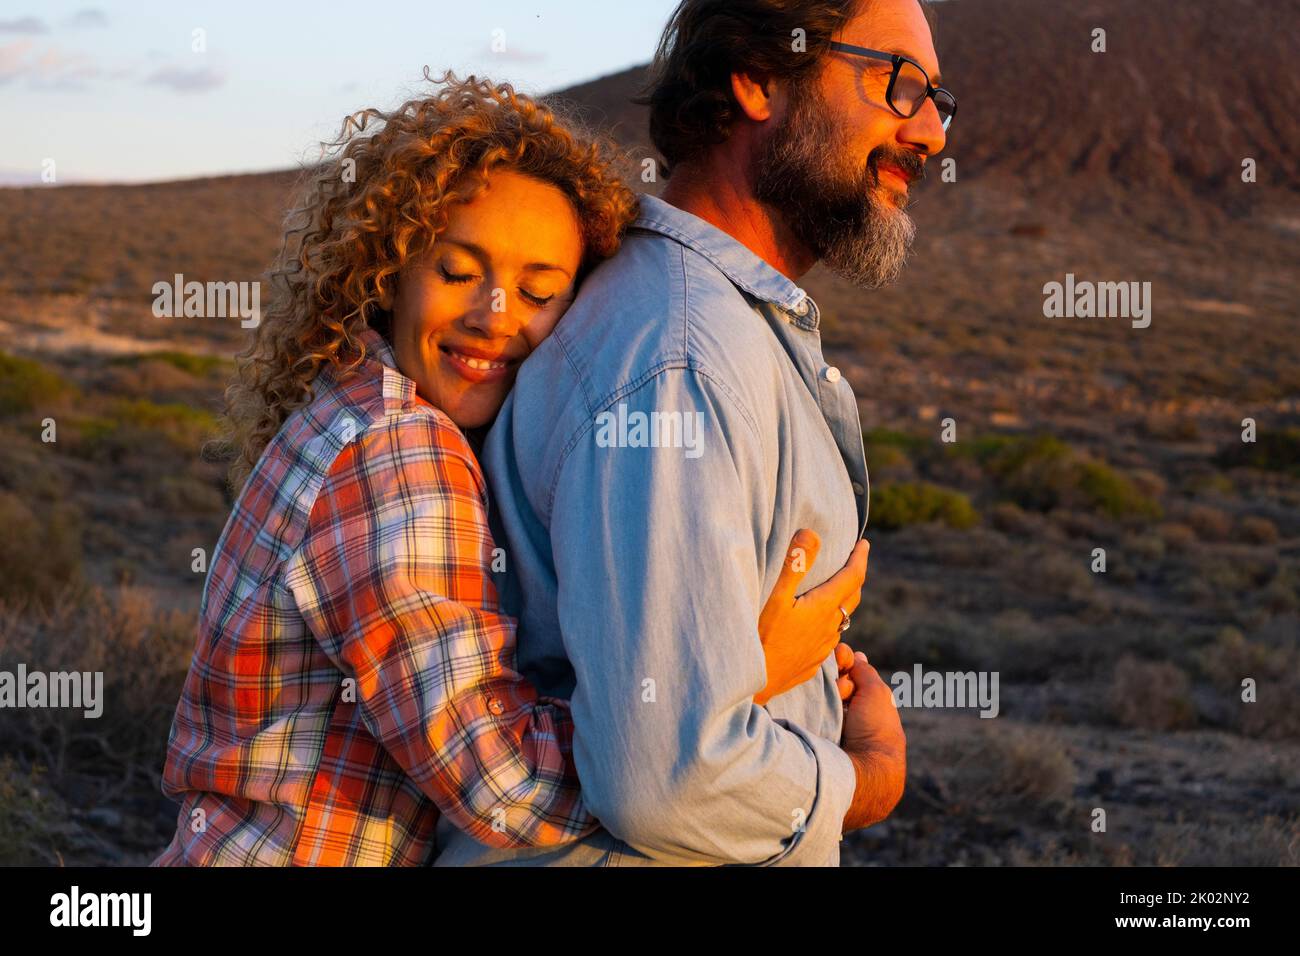 Ältere junge Menschen lieben es, sich zu umarmen und romantische Aktivitäten im Freien bei Sonnenuntergang zu genießen. Mann und Frau umarmen und lieben sich gegenseitig. Berge im Hintergrund. Reisekonzept Stockfoto